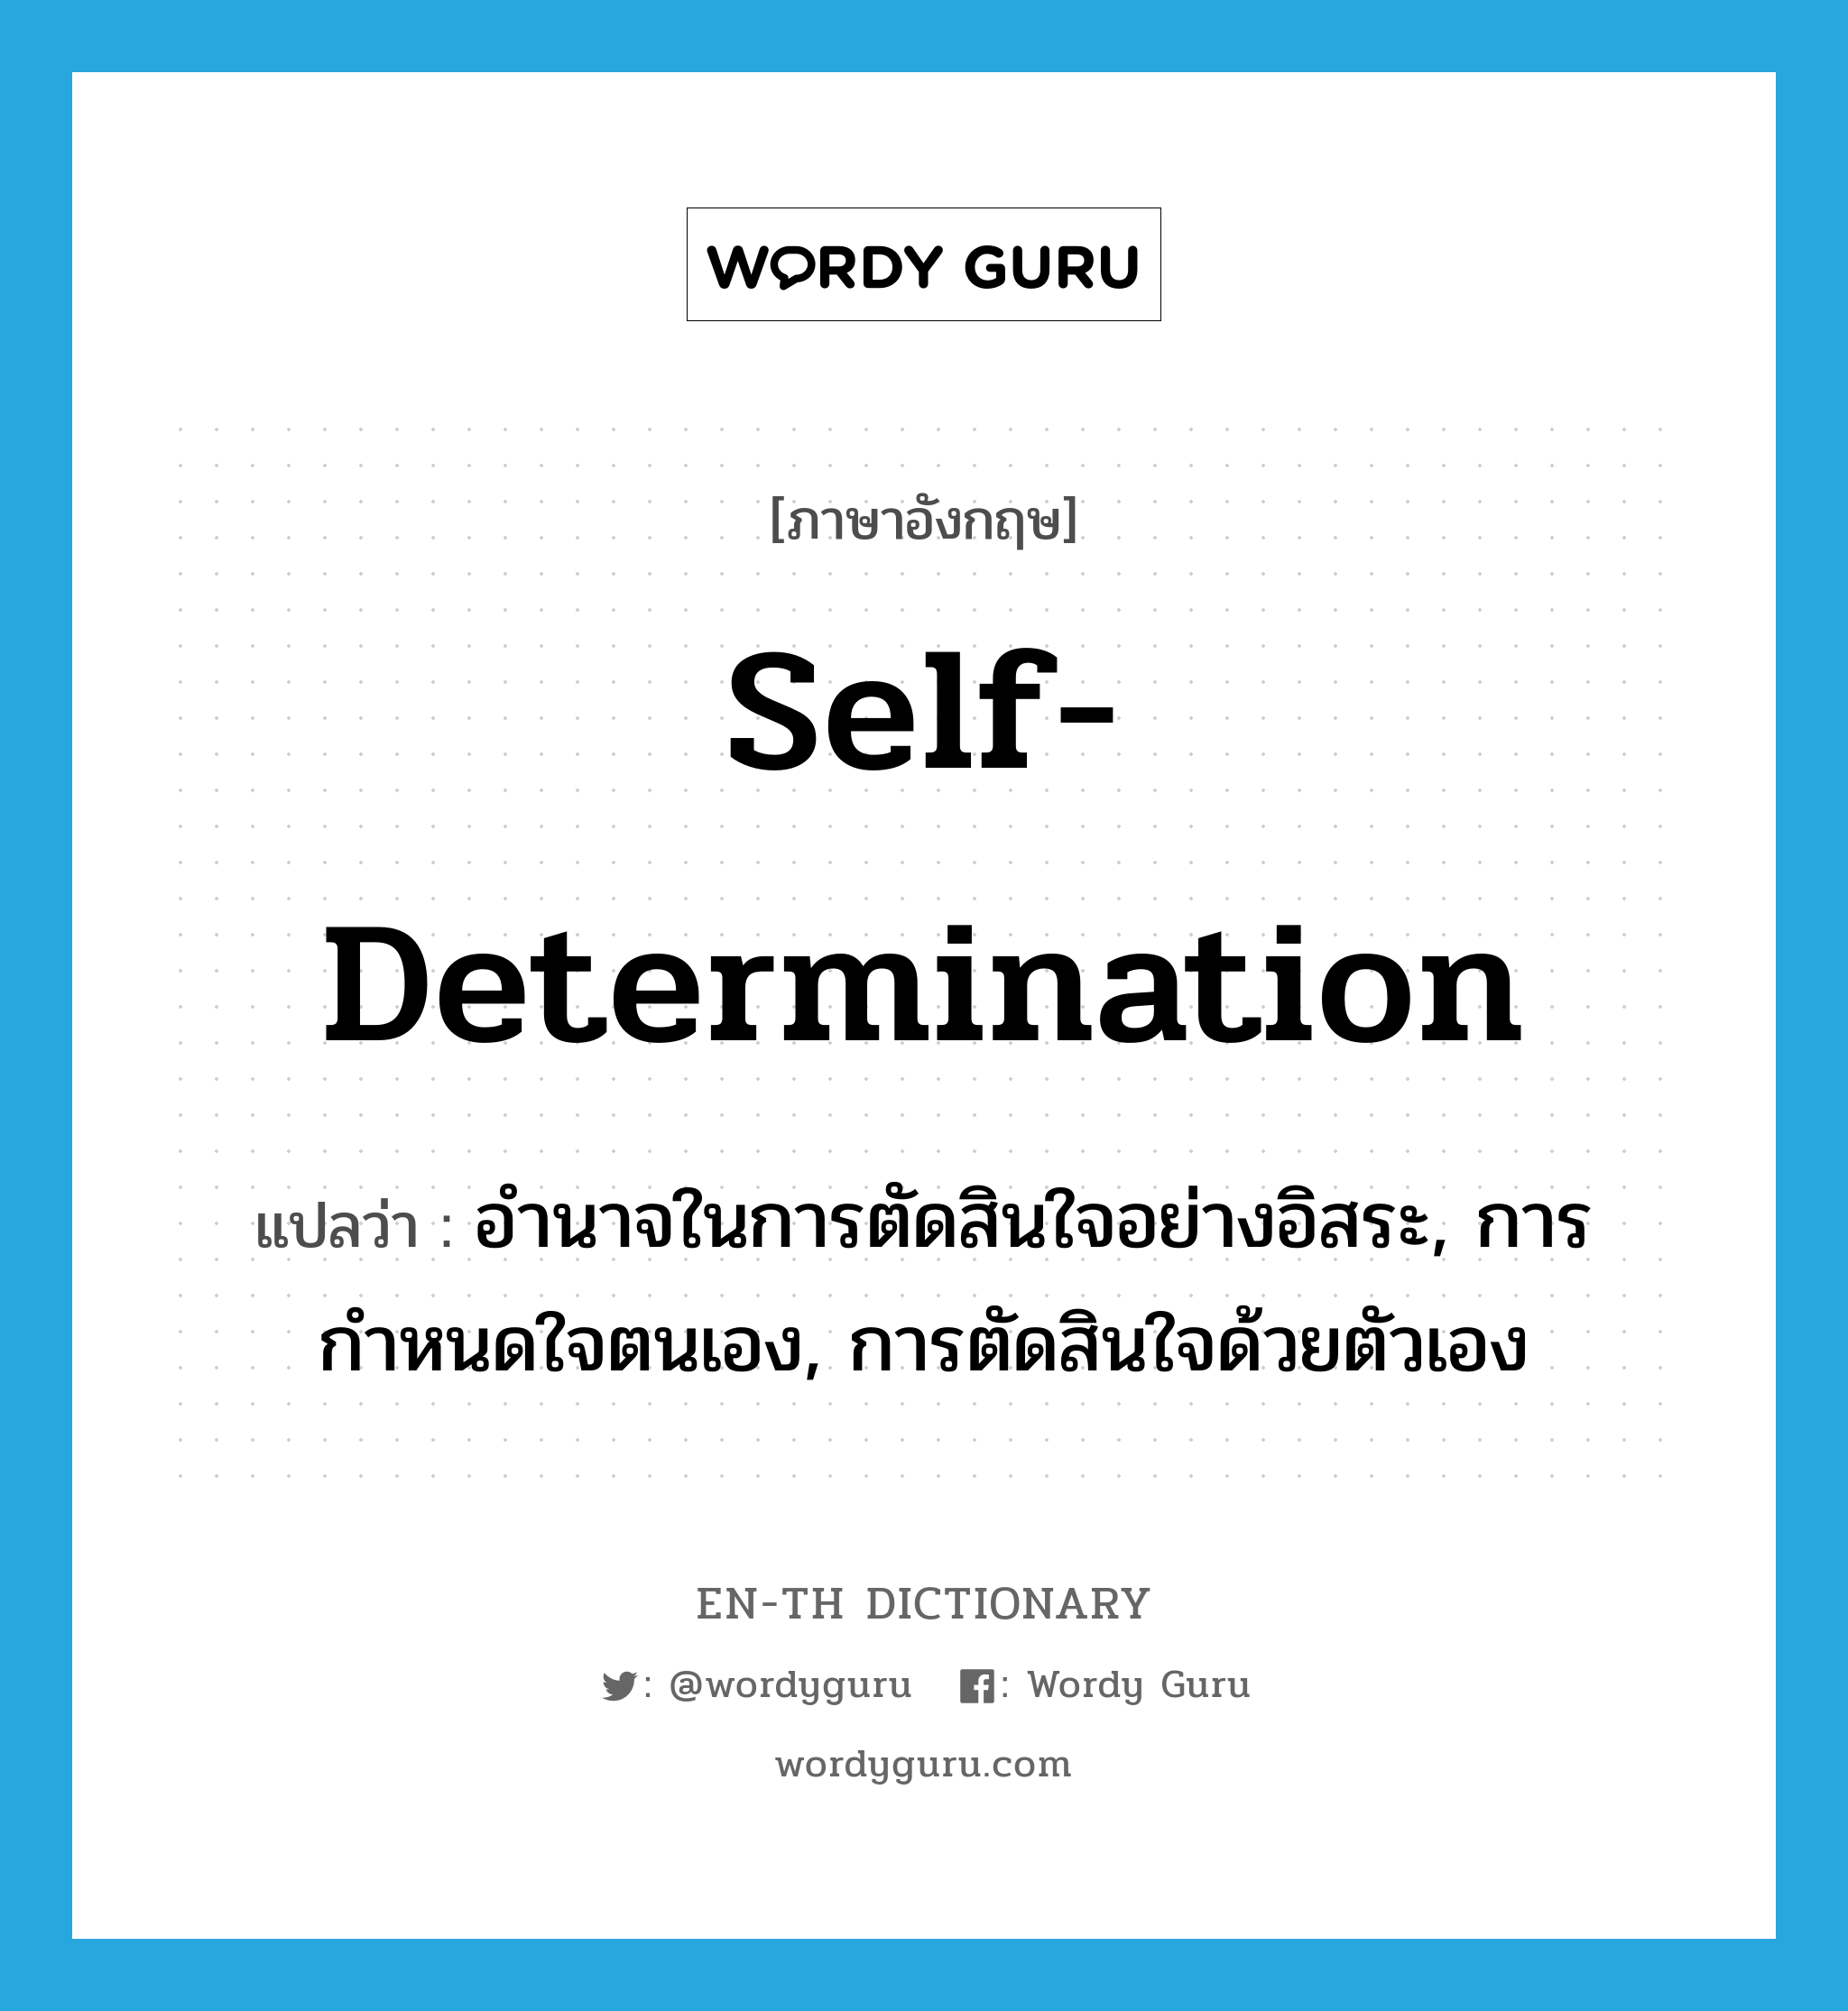 self-determination แปลว่า?, คำศัพท์ภาษาอังกฤษ self-determination แปลว่า อำนาจในการตัดสินใจอย่างอิสระ, การกำหนดใจตนเอง, การตัดสินใจด้วยตัวเอง ประเภท N หมวด N